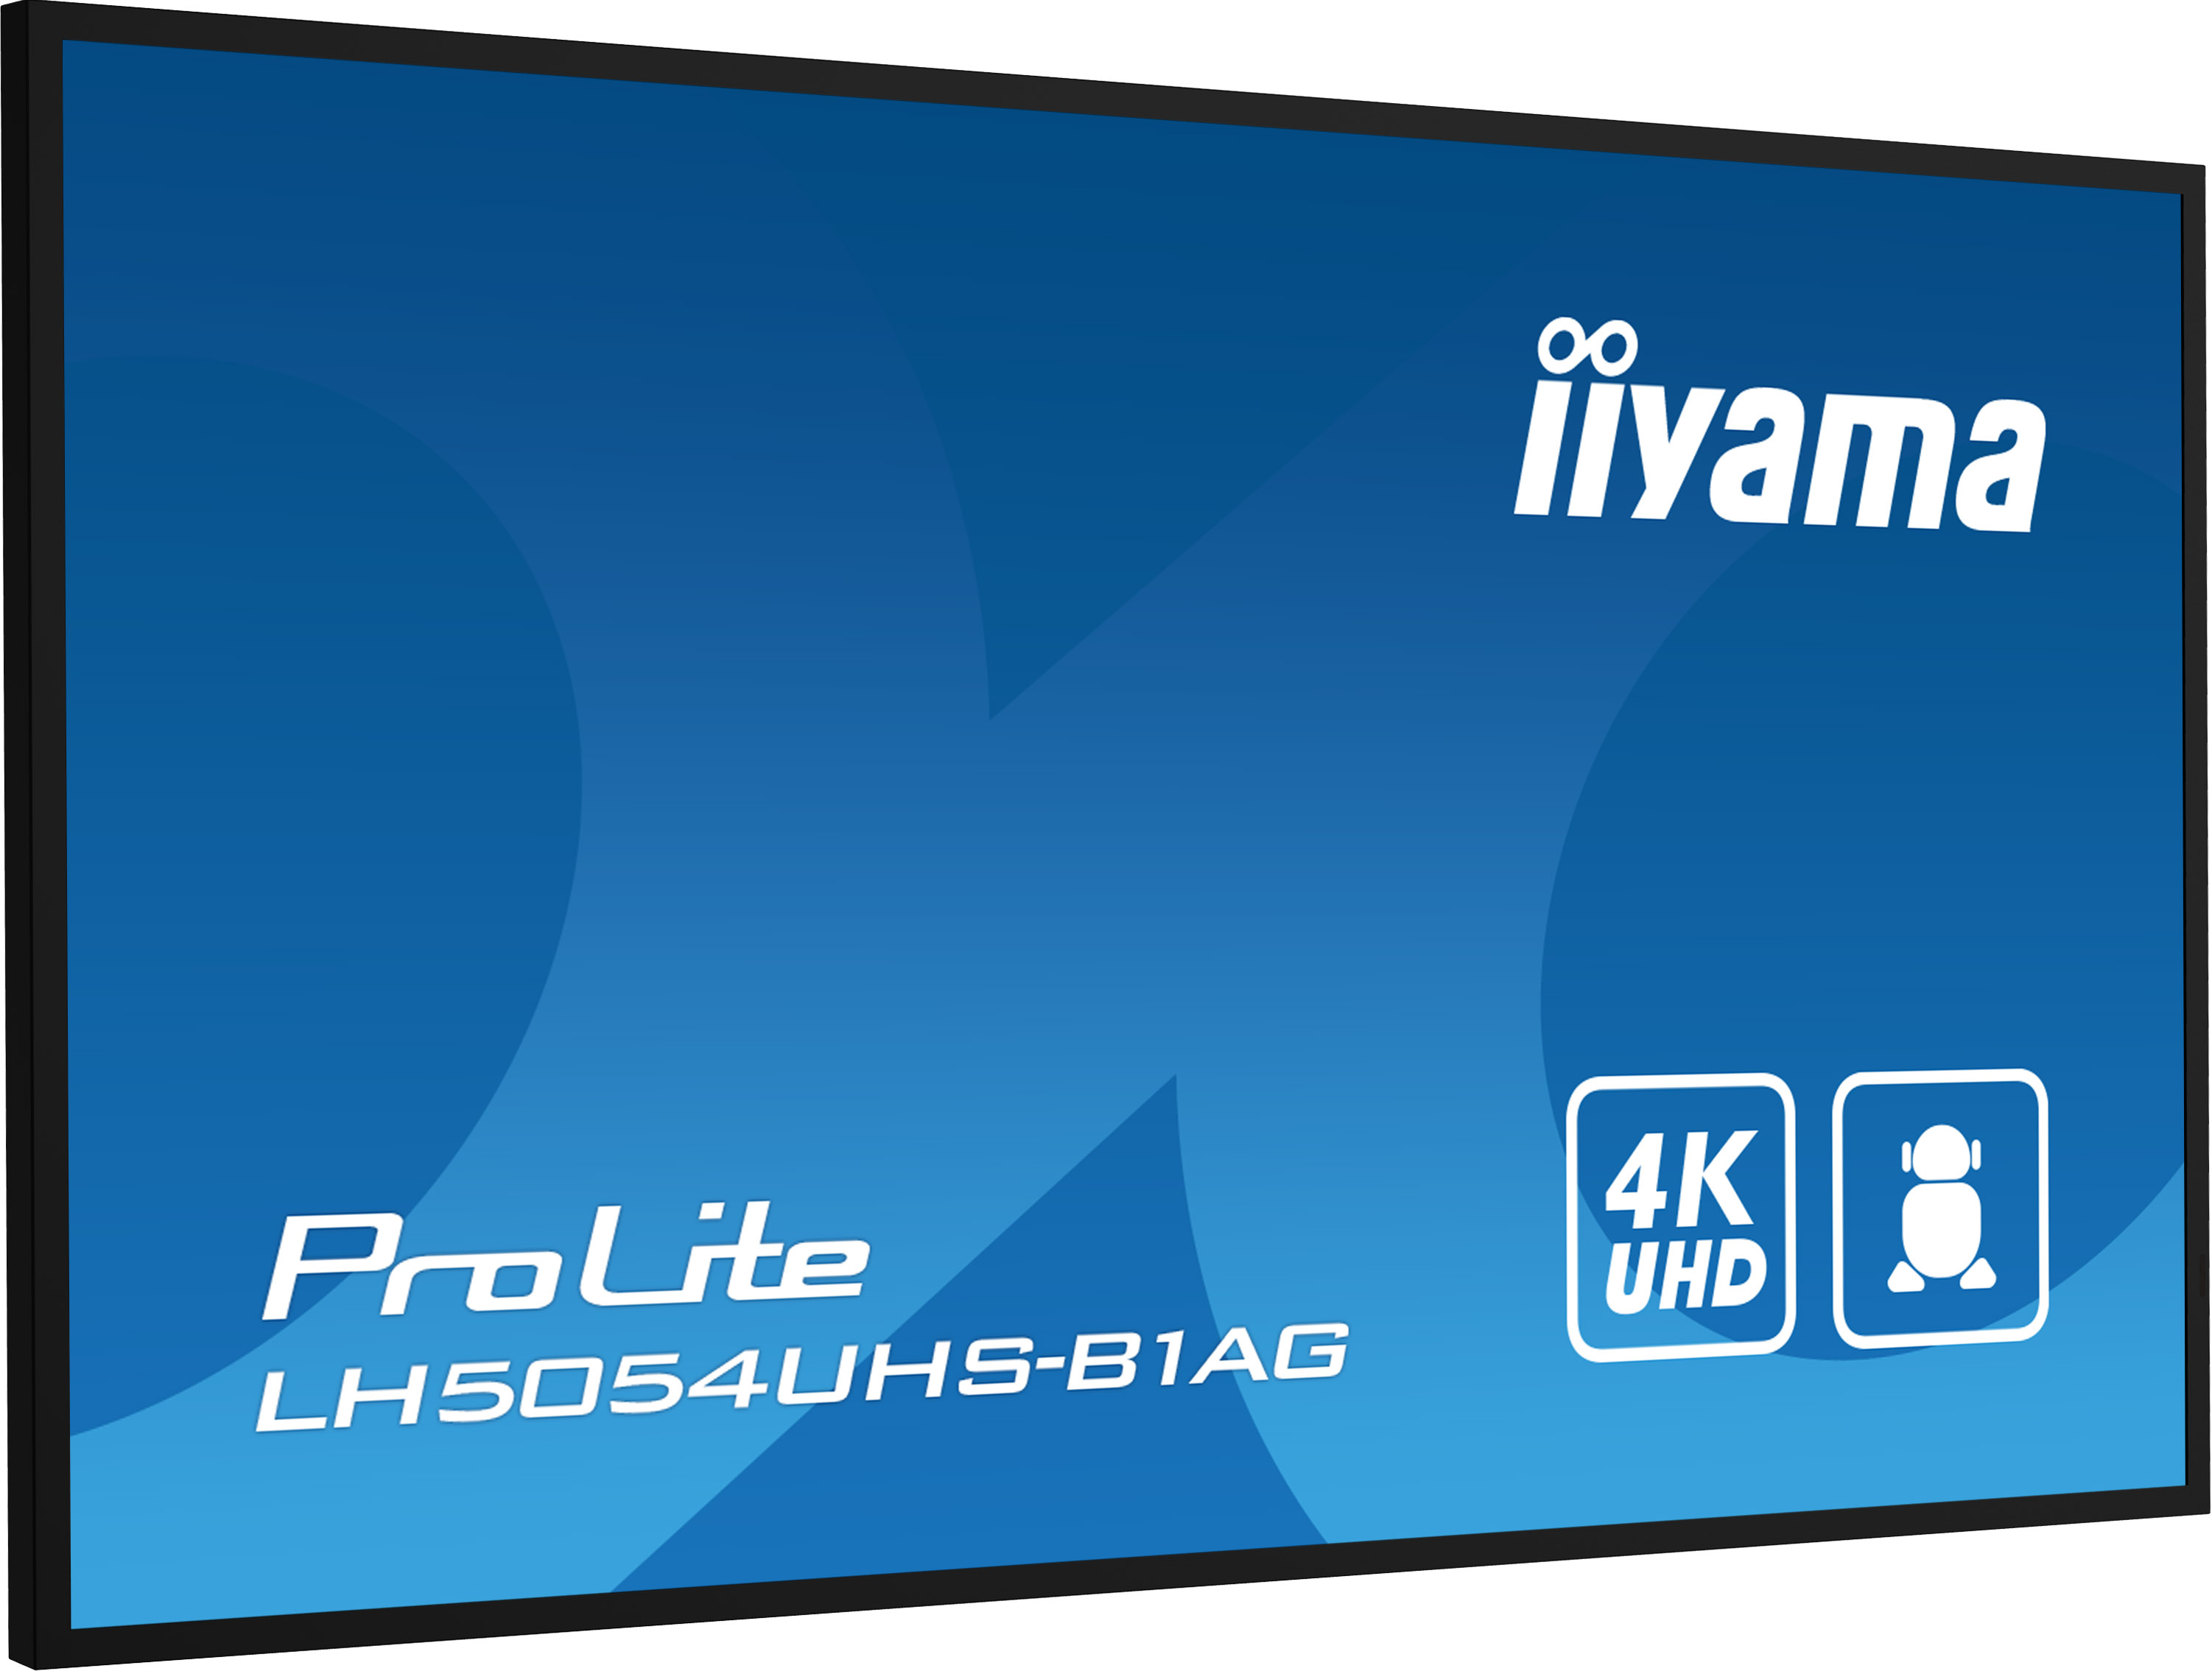 50" iiyama LH5054UHS-B1AG: VA, 4K UHD, Android, 24/ 7 